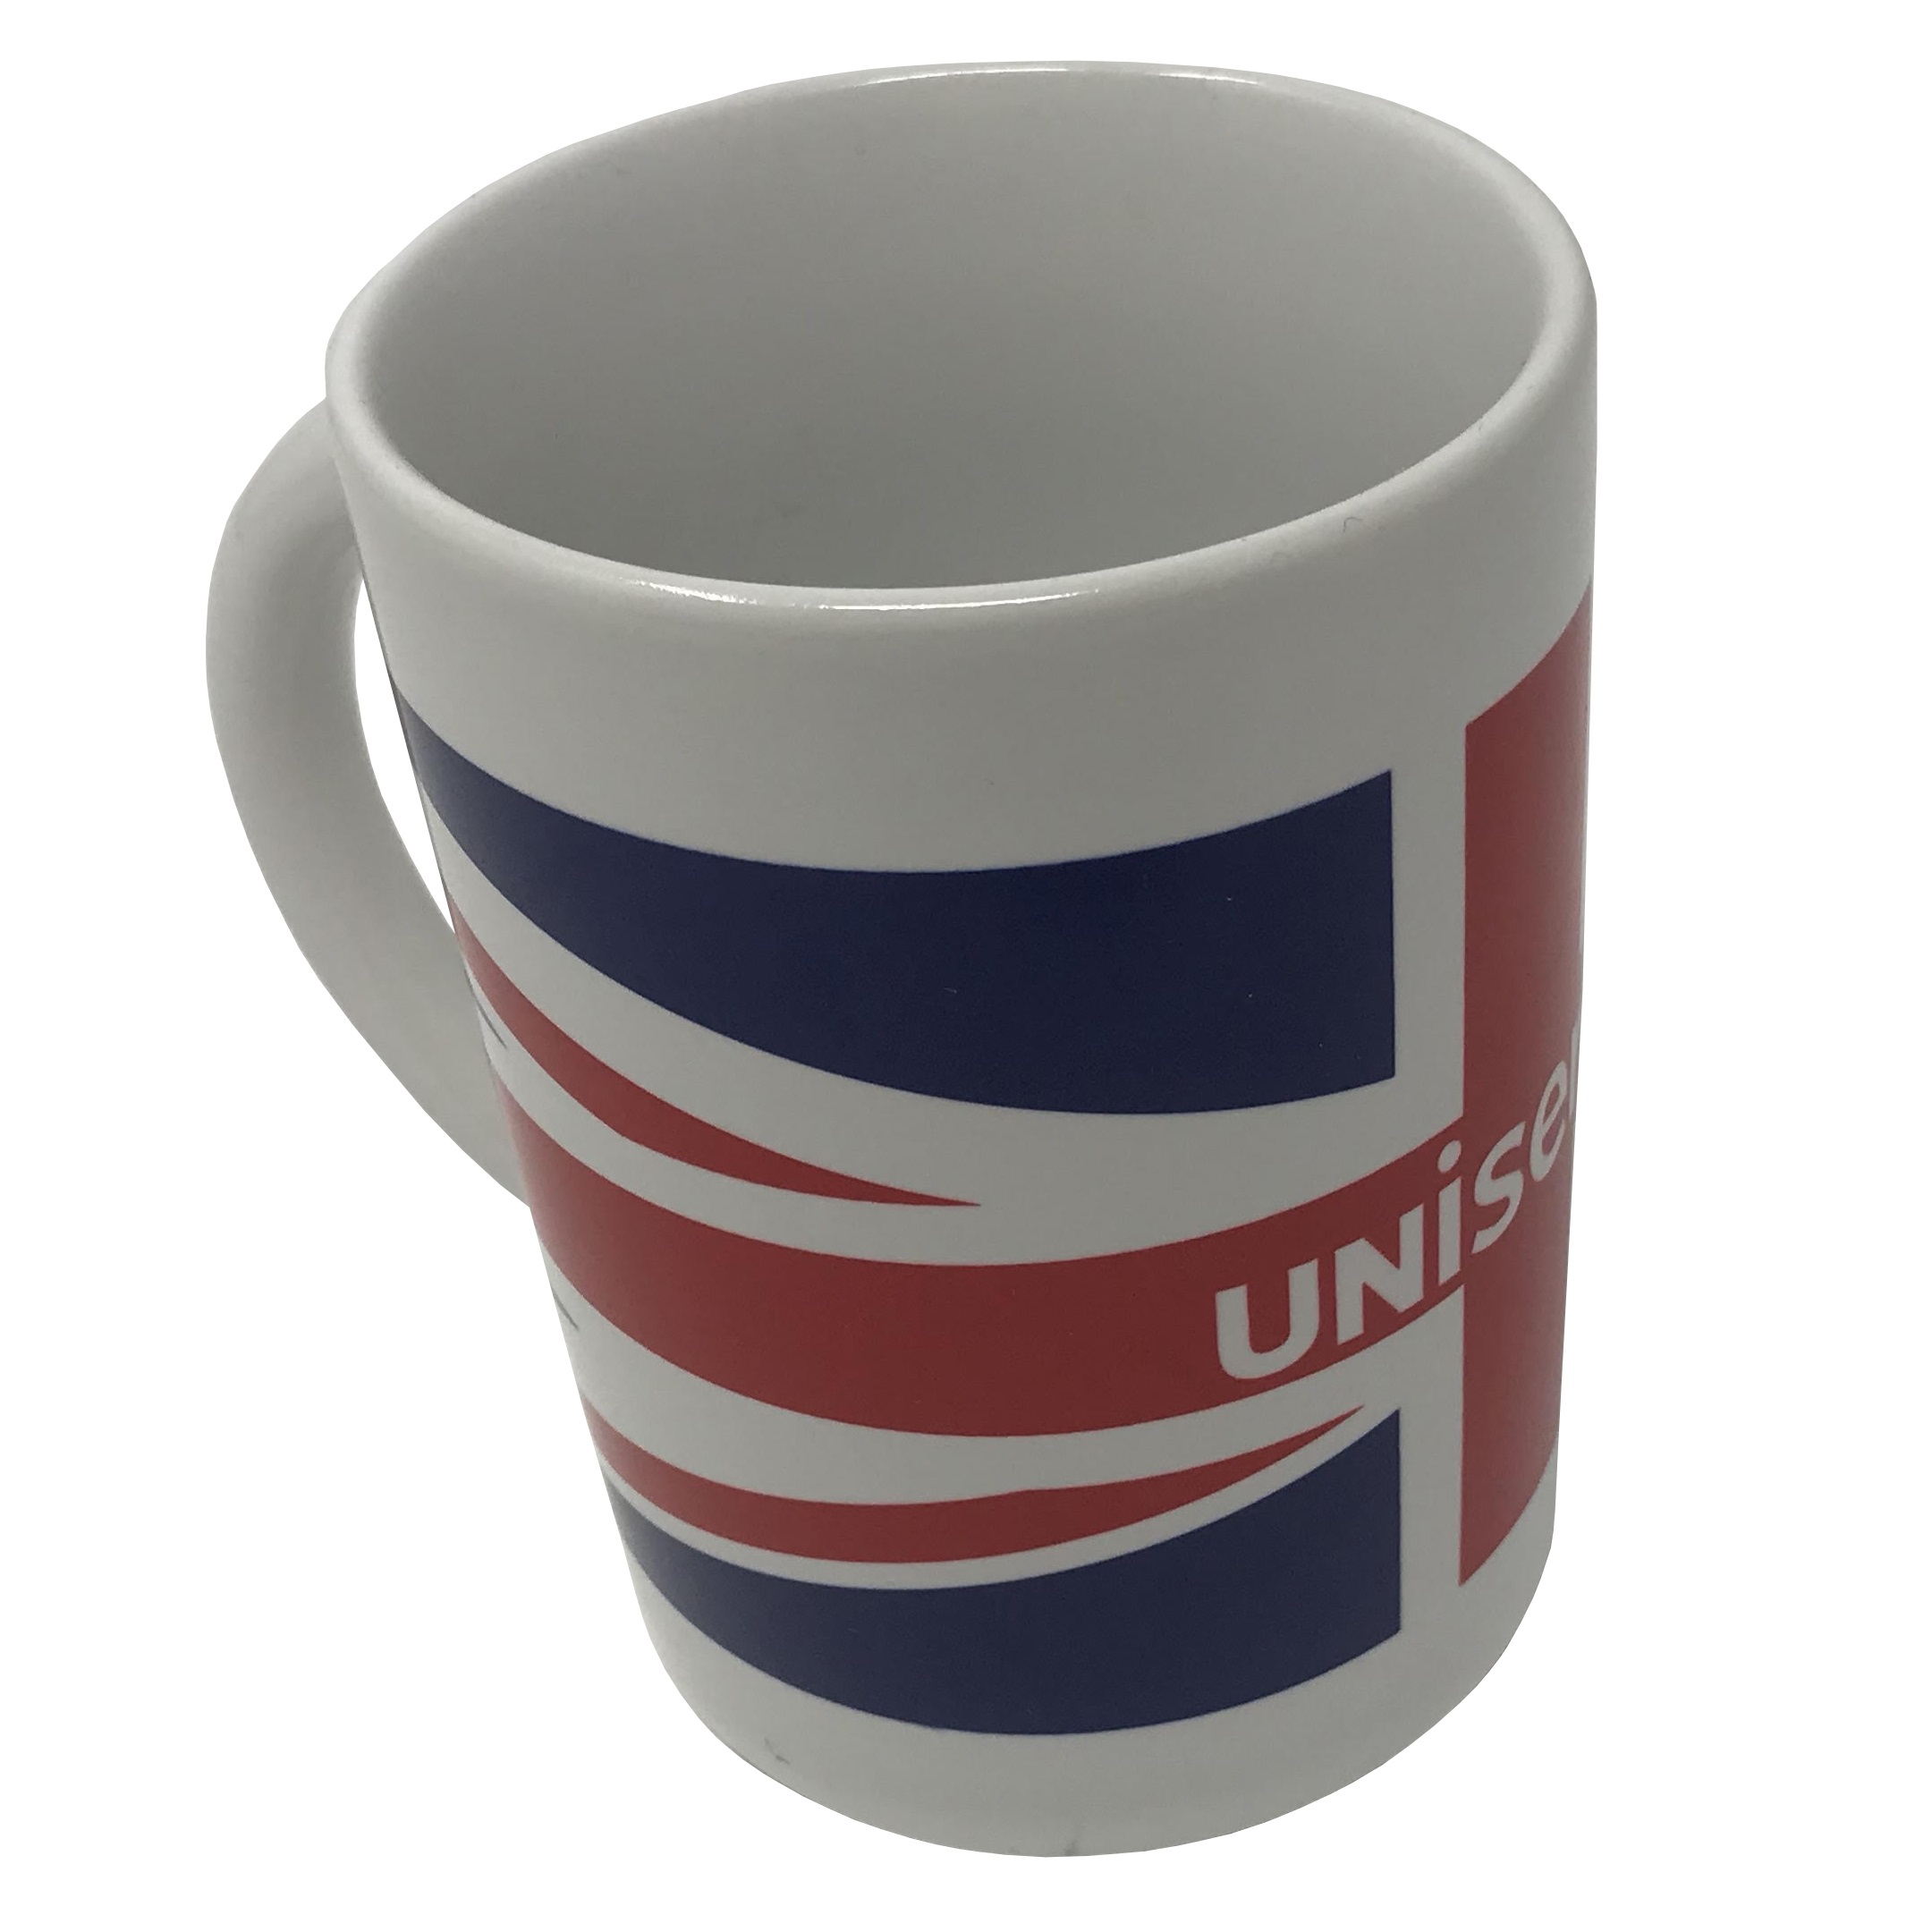 Uniserve Branded Mug